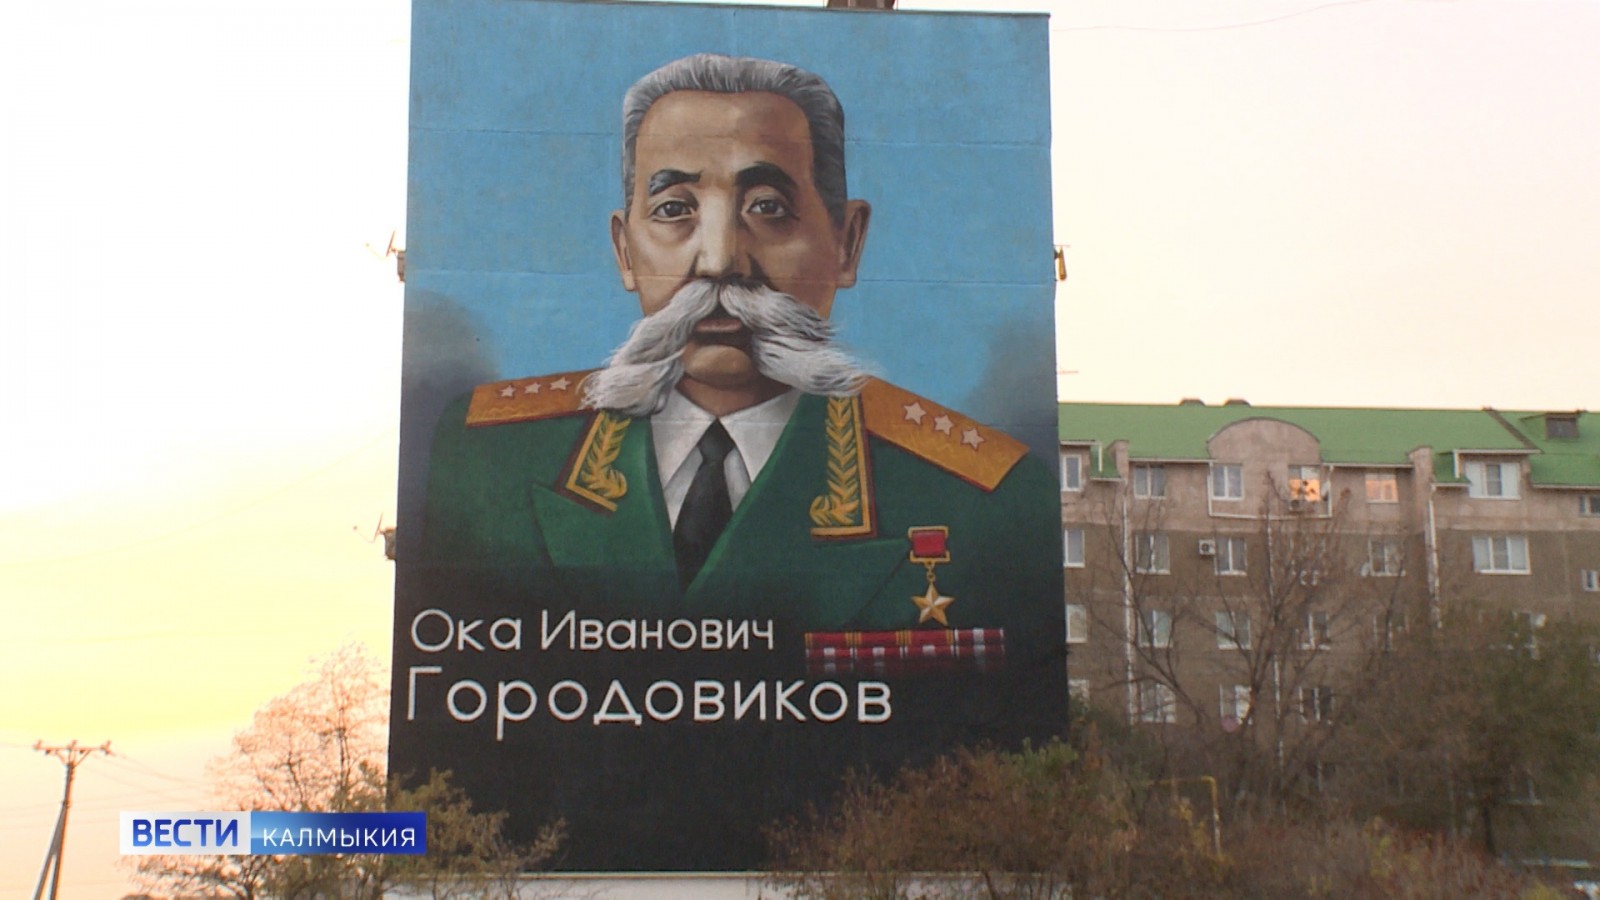 В Элисте появилось граффити с изображением Героя Советского Союза Оки Ивановича Городовикова